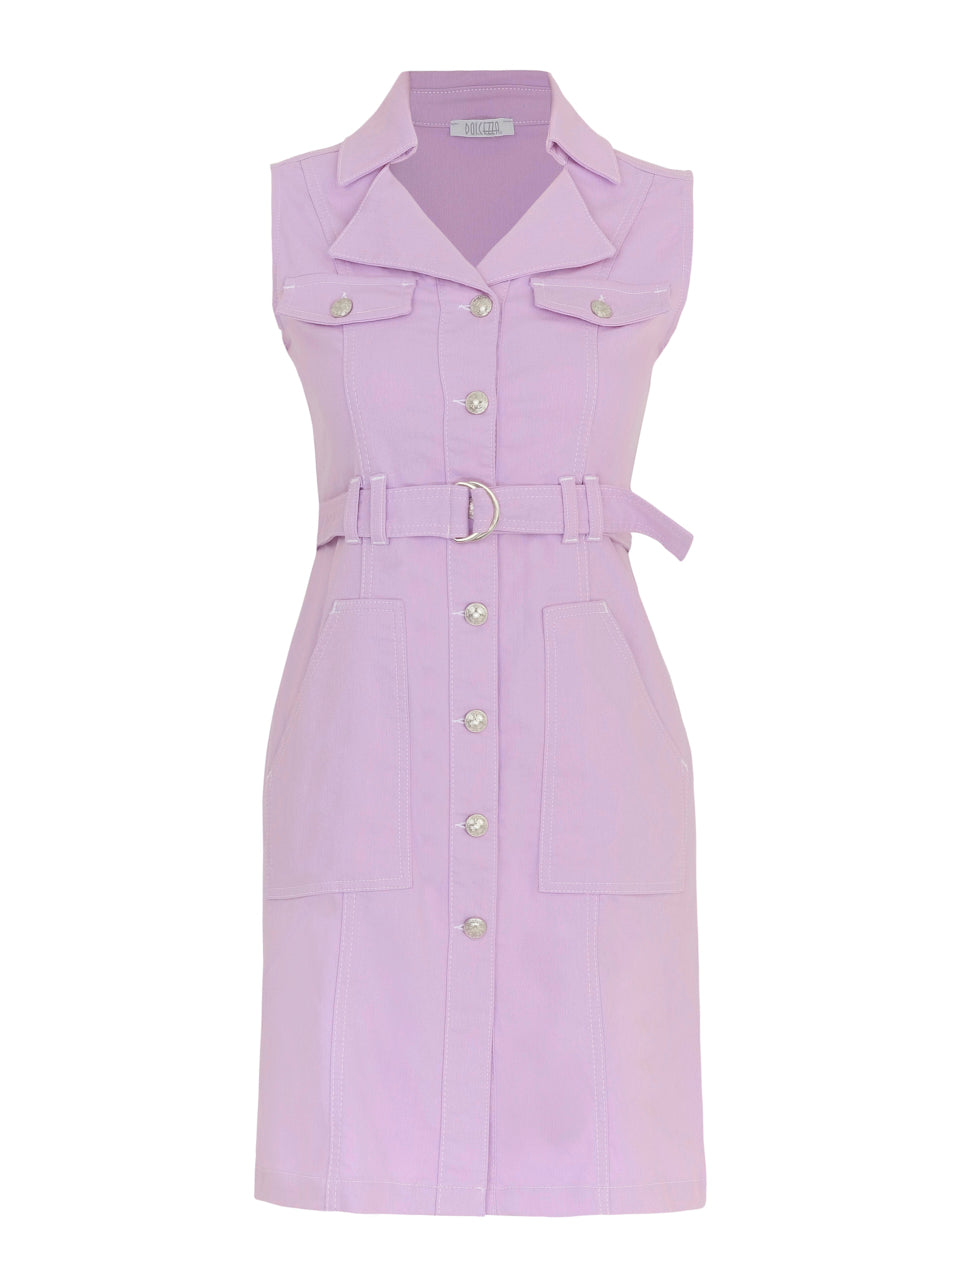 <p>Dolcezza lavender denim button up pencil dress</p>
<p>Product code 24201</p>